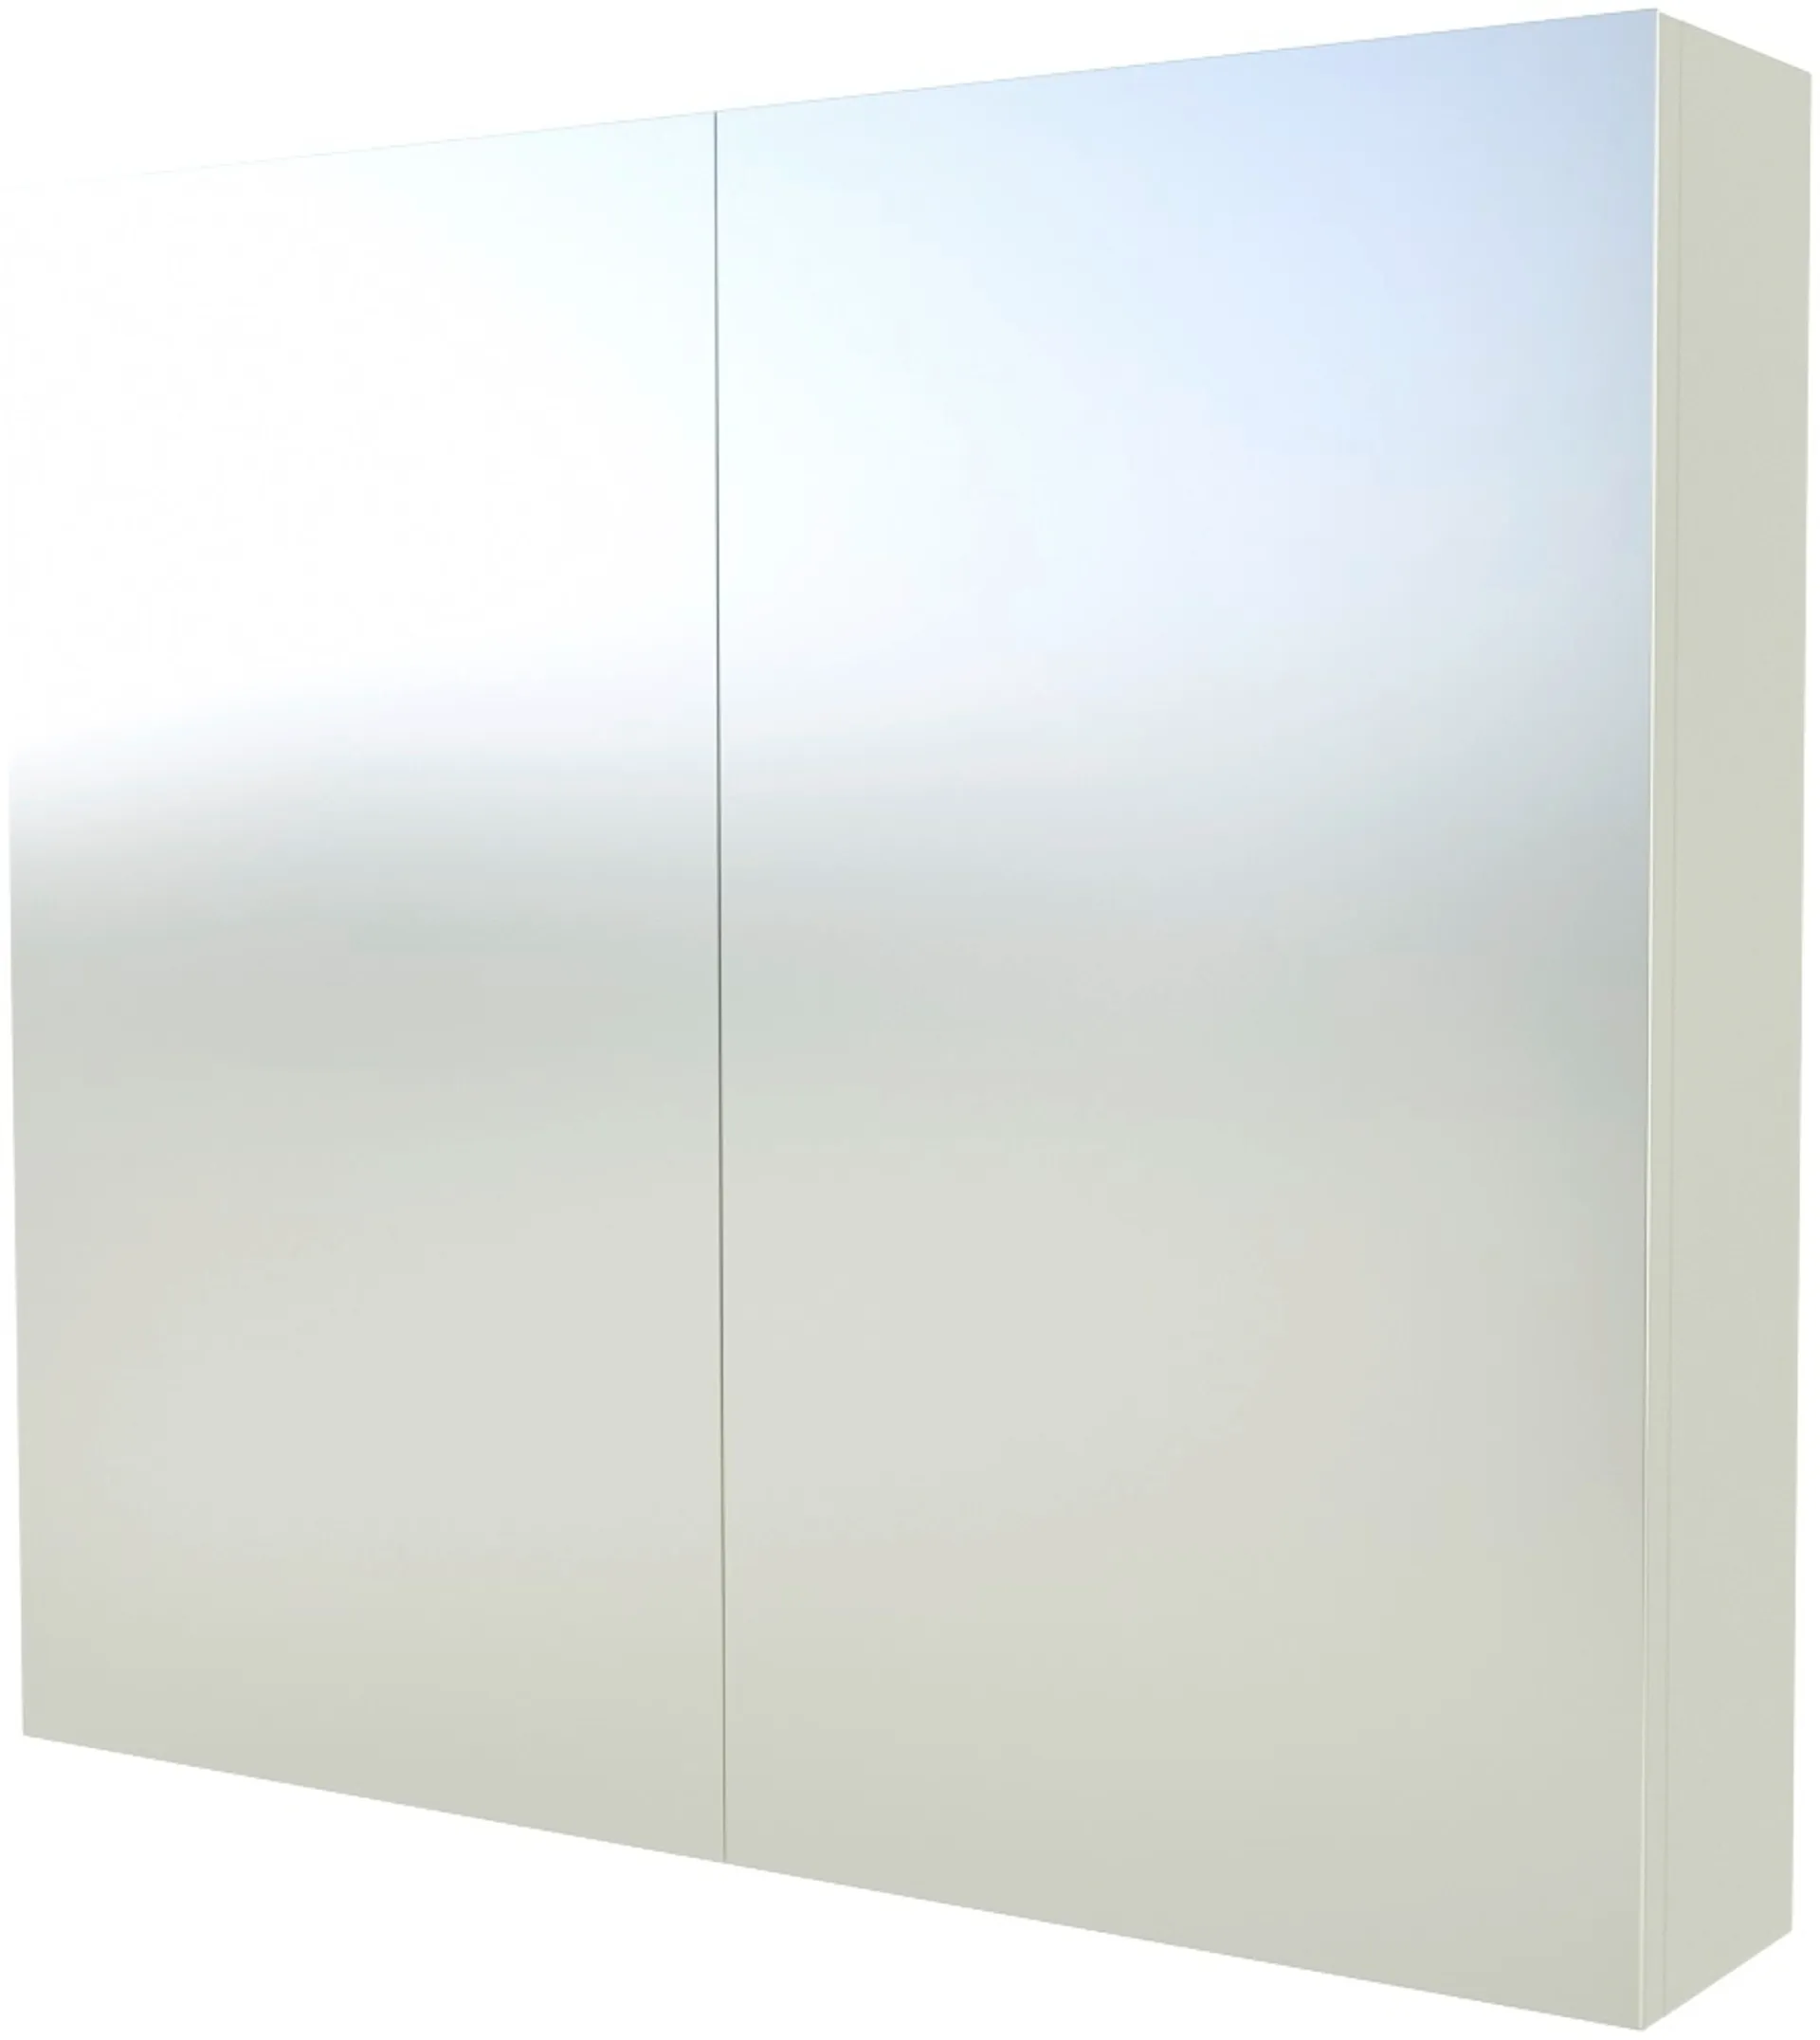 Indoor Suvas 80cm valkoinen peilikaappi 2-puoleisilla peiliovilla - 1